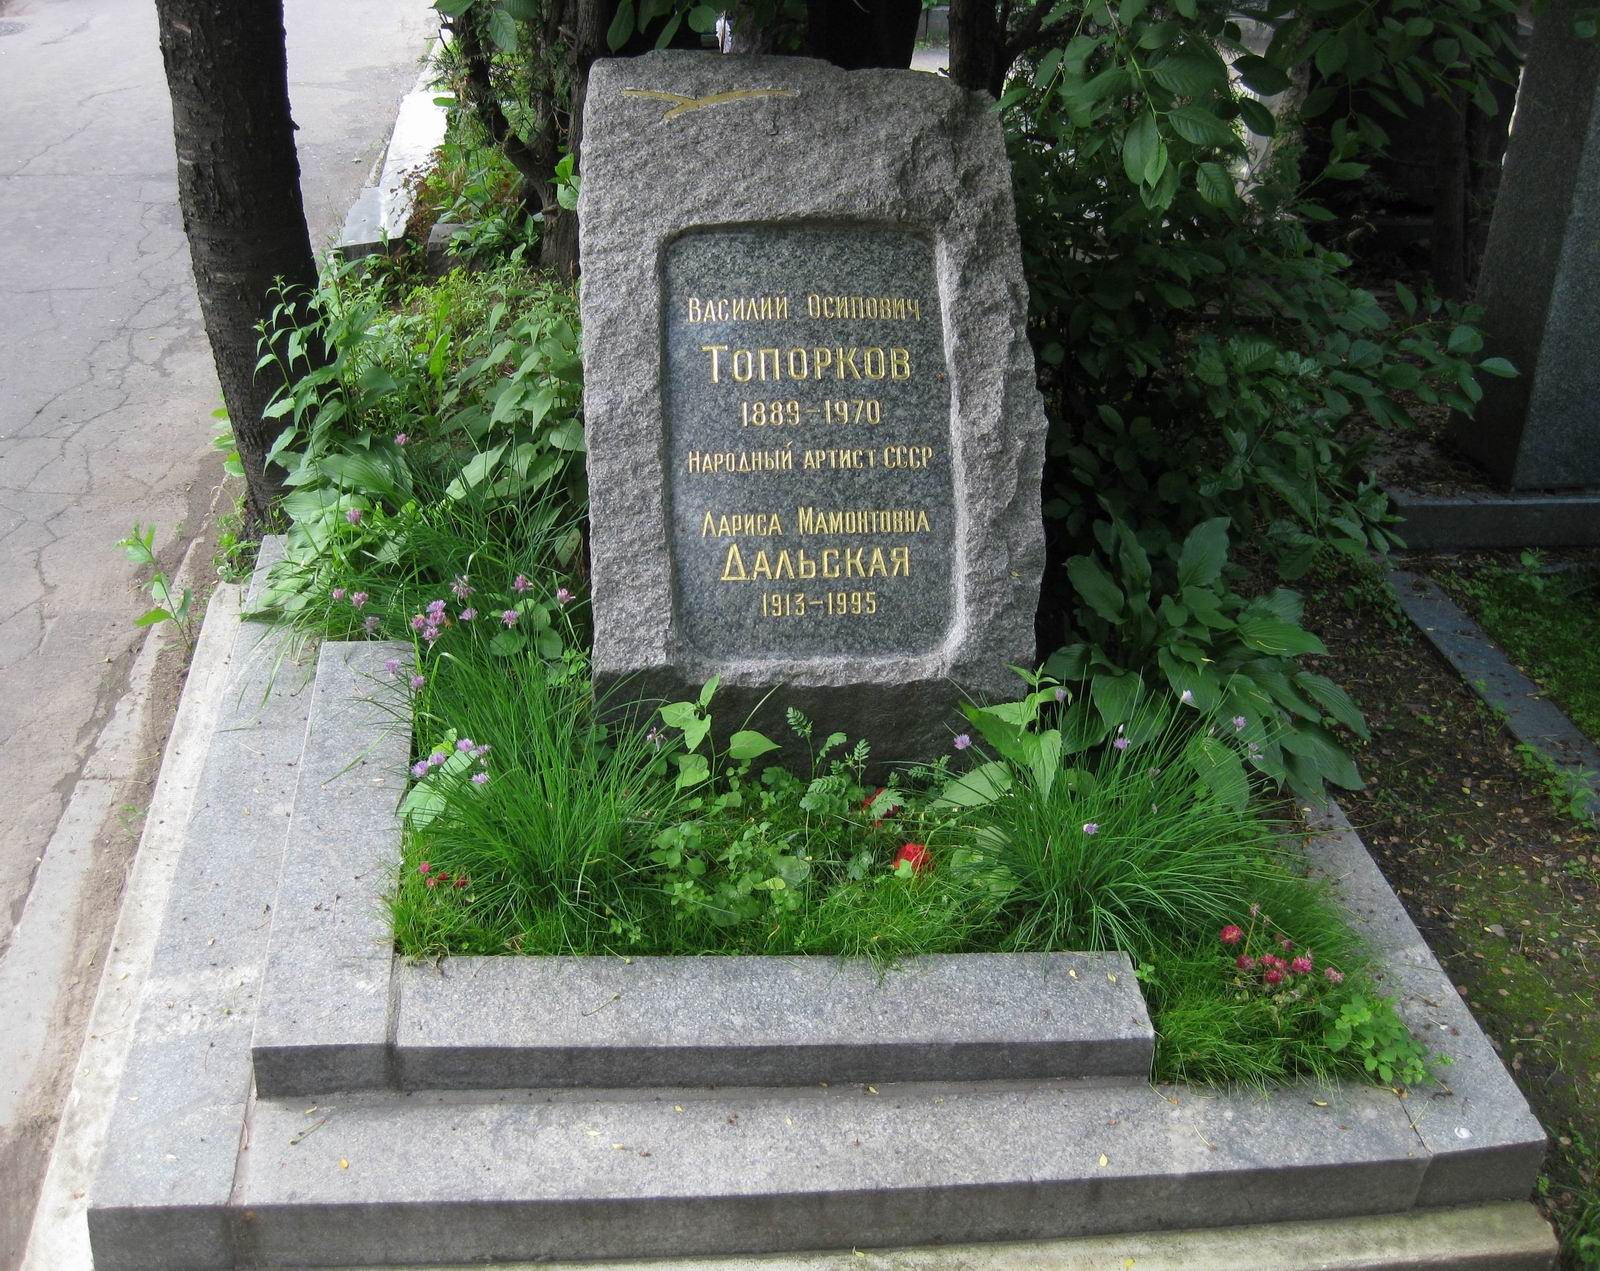 Памятник на могиле Топоркова В.О. (1889-1970), арх. Е.Розенблюм, на Новодевичьем кладбище (7-9-12).